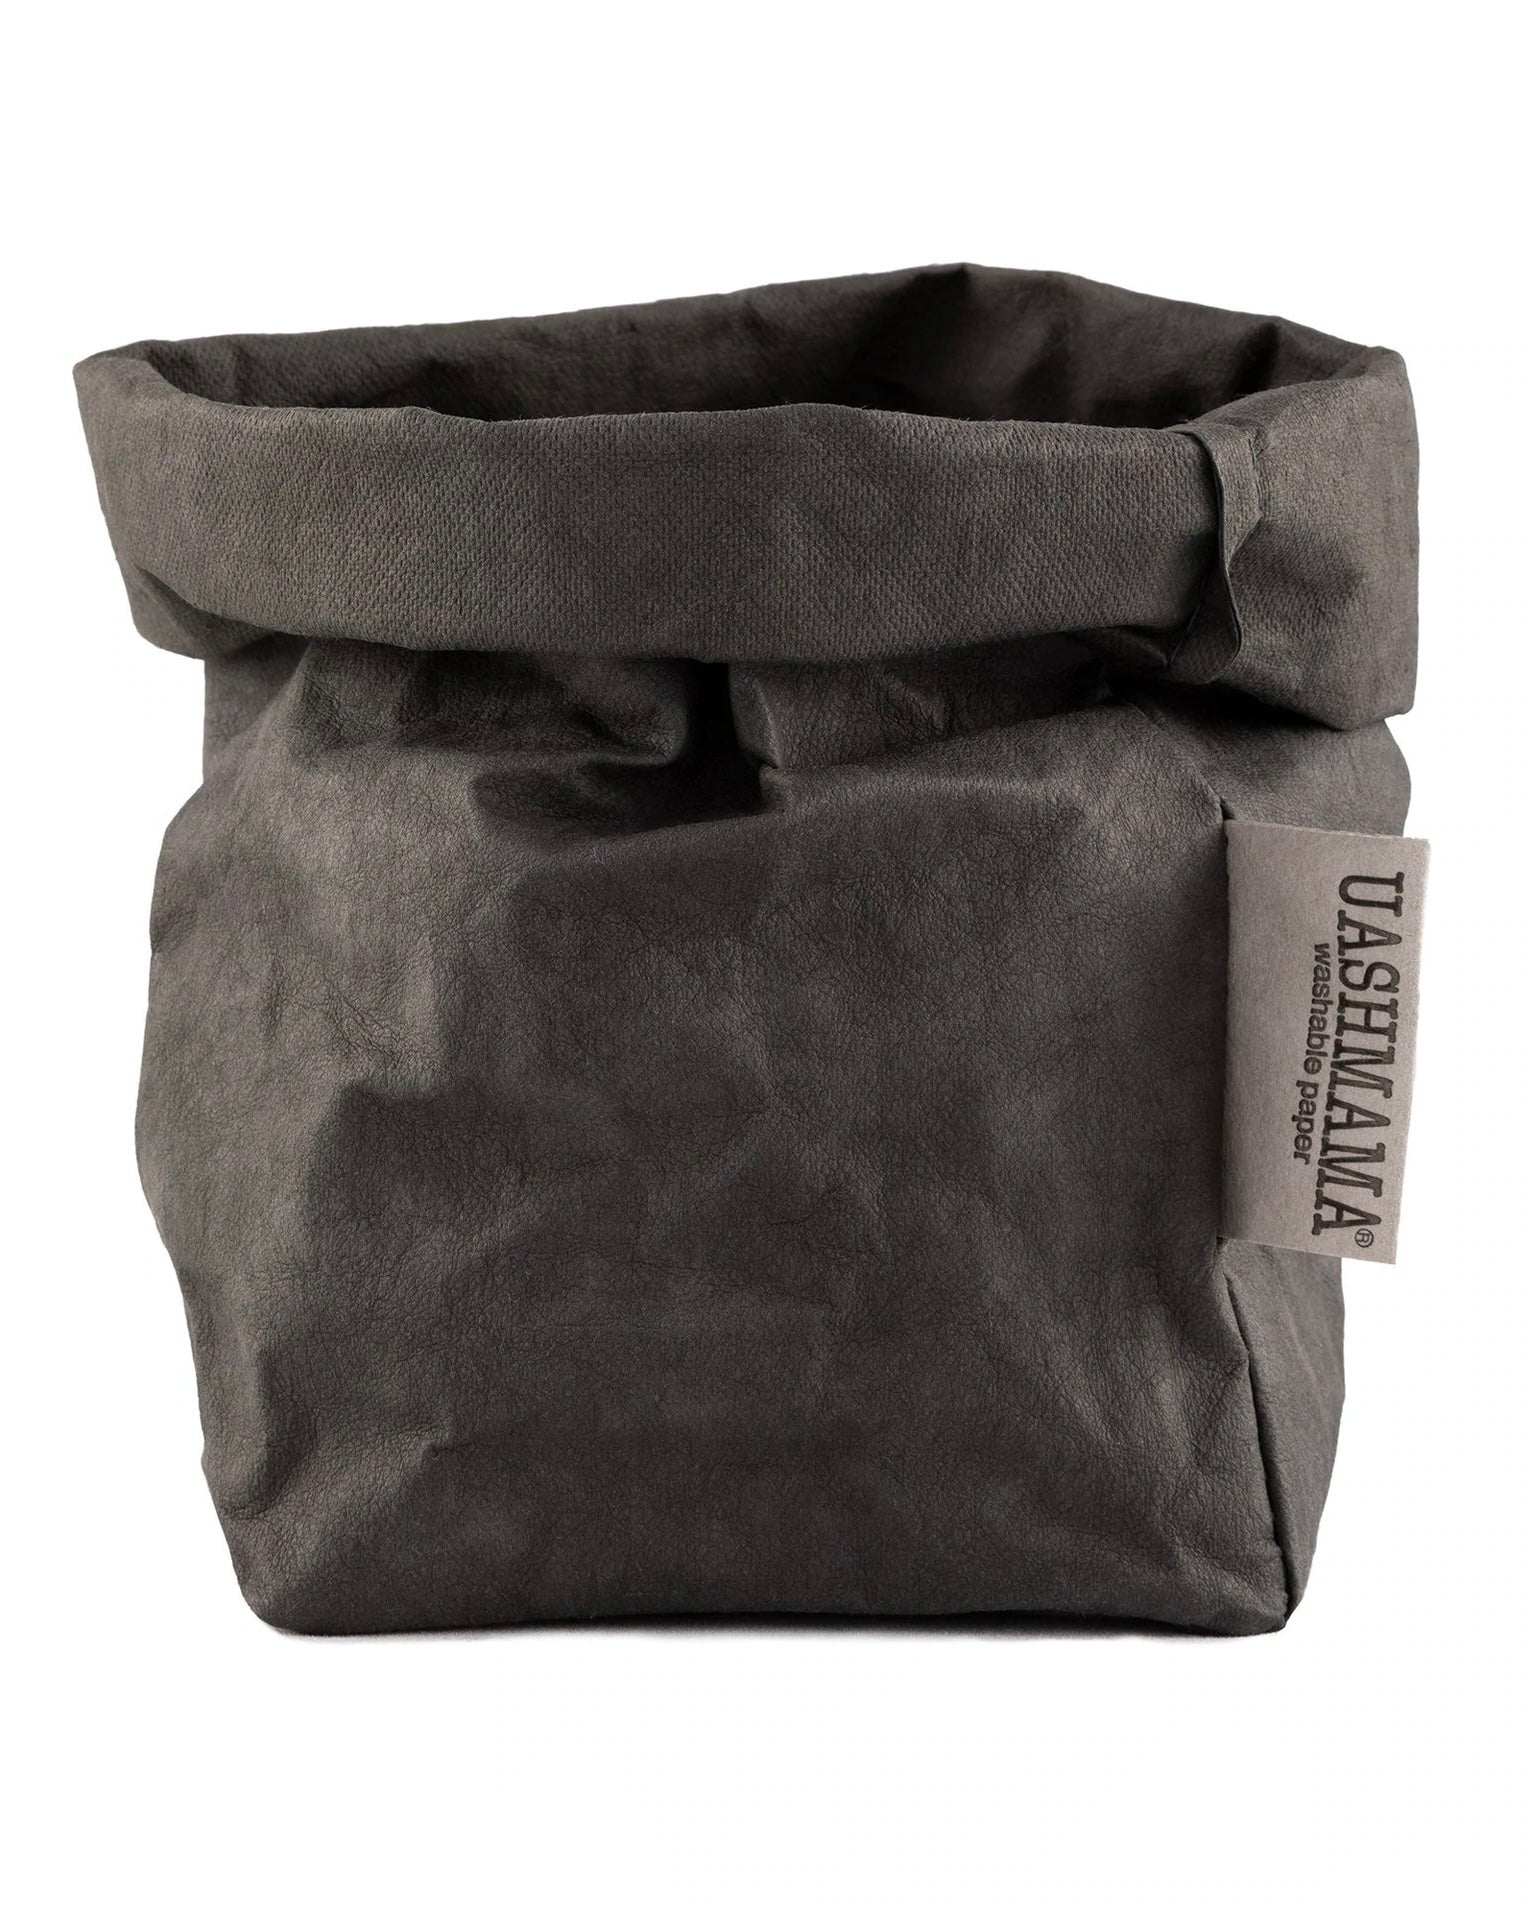 Paper Bag - Dark Grey - Small